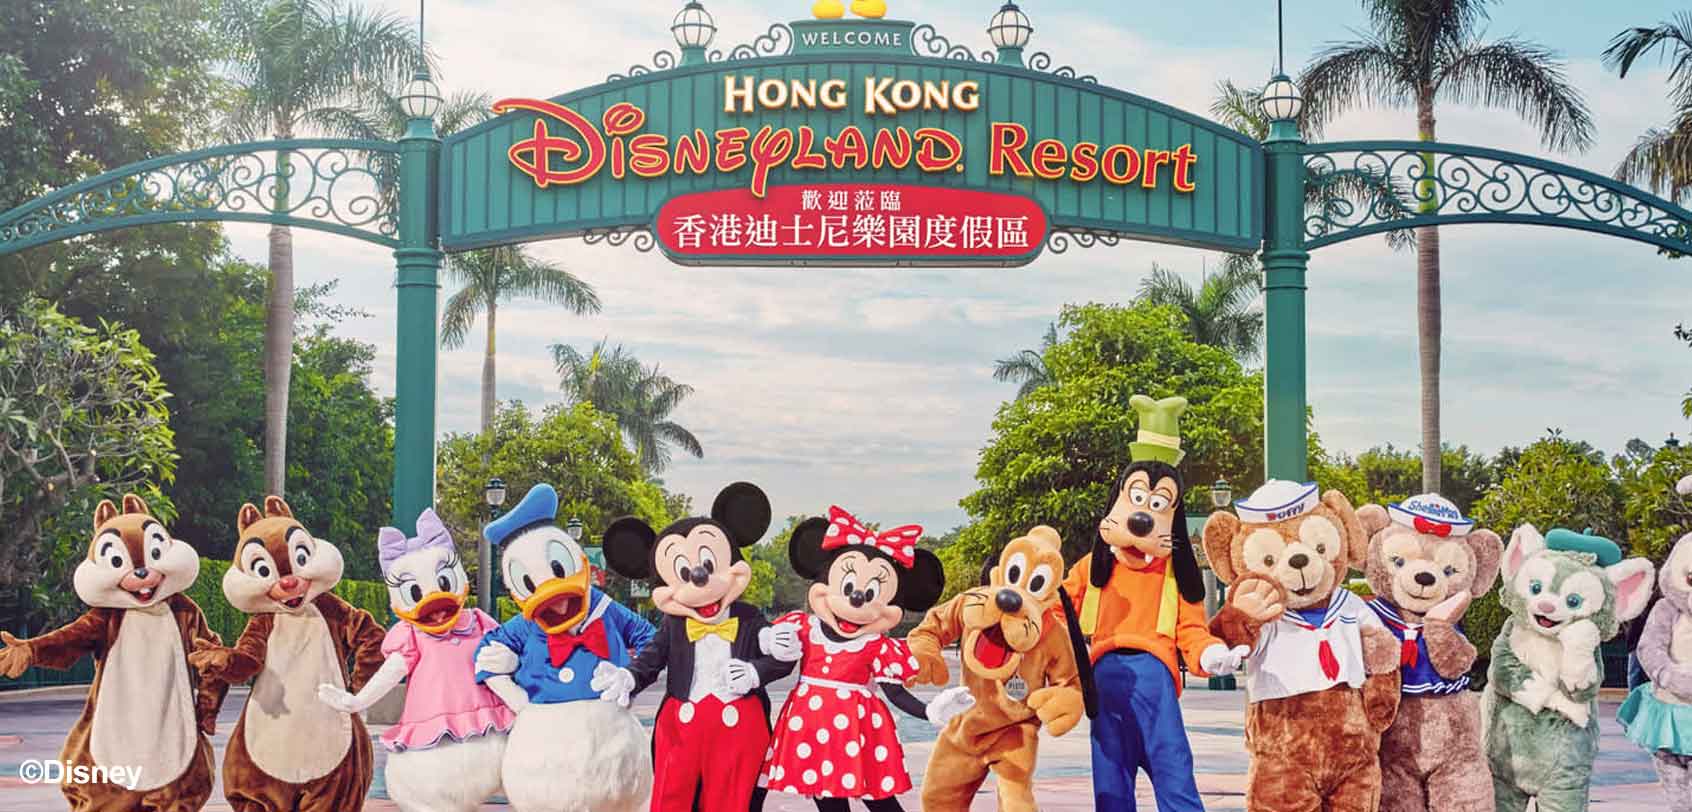 Fun Things to Do in Hong Kong: Hong Kong Disneyland